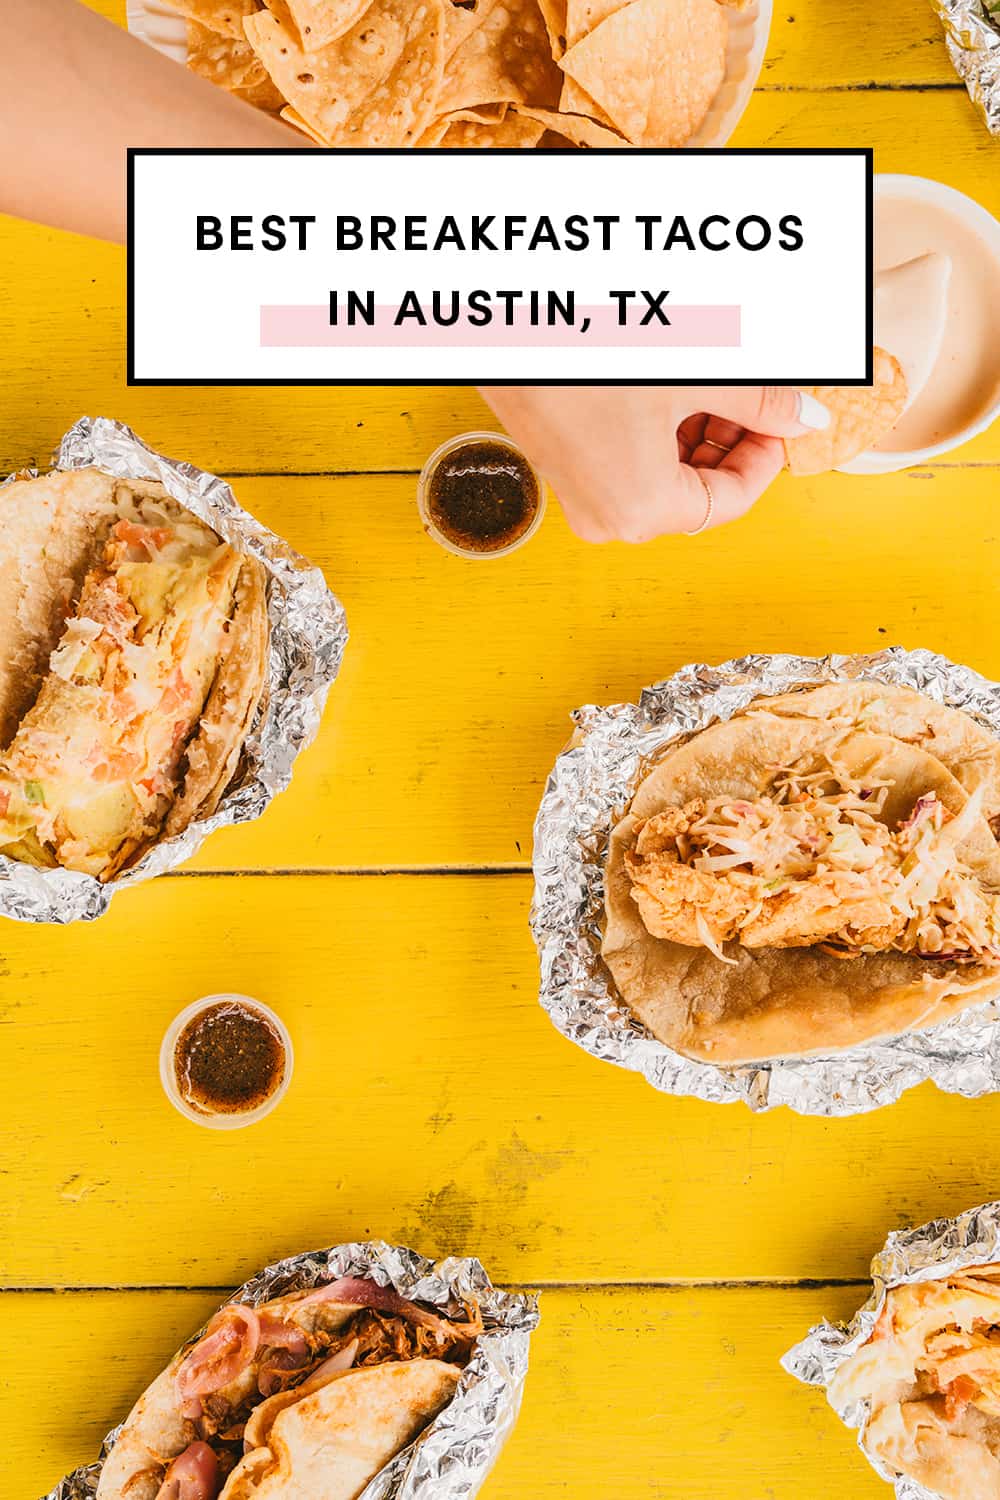 Best Breakfast Tacos in Austin TX